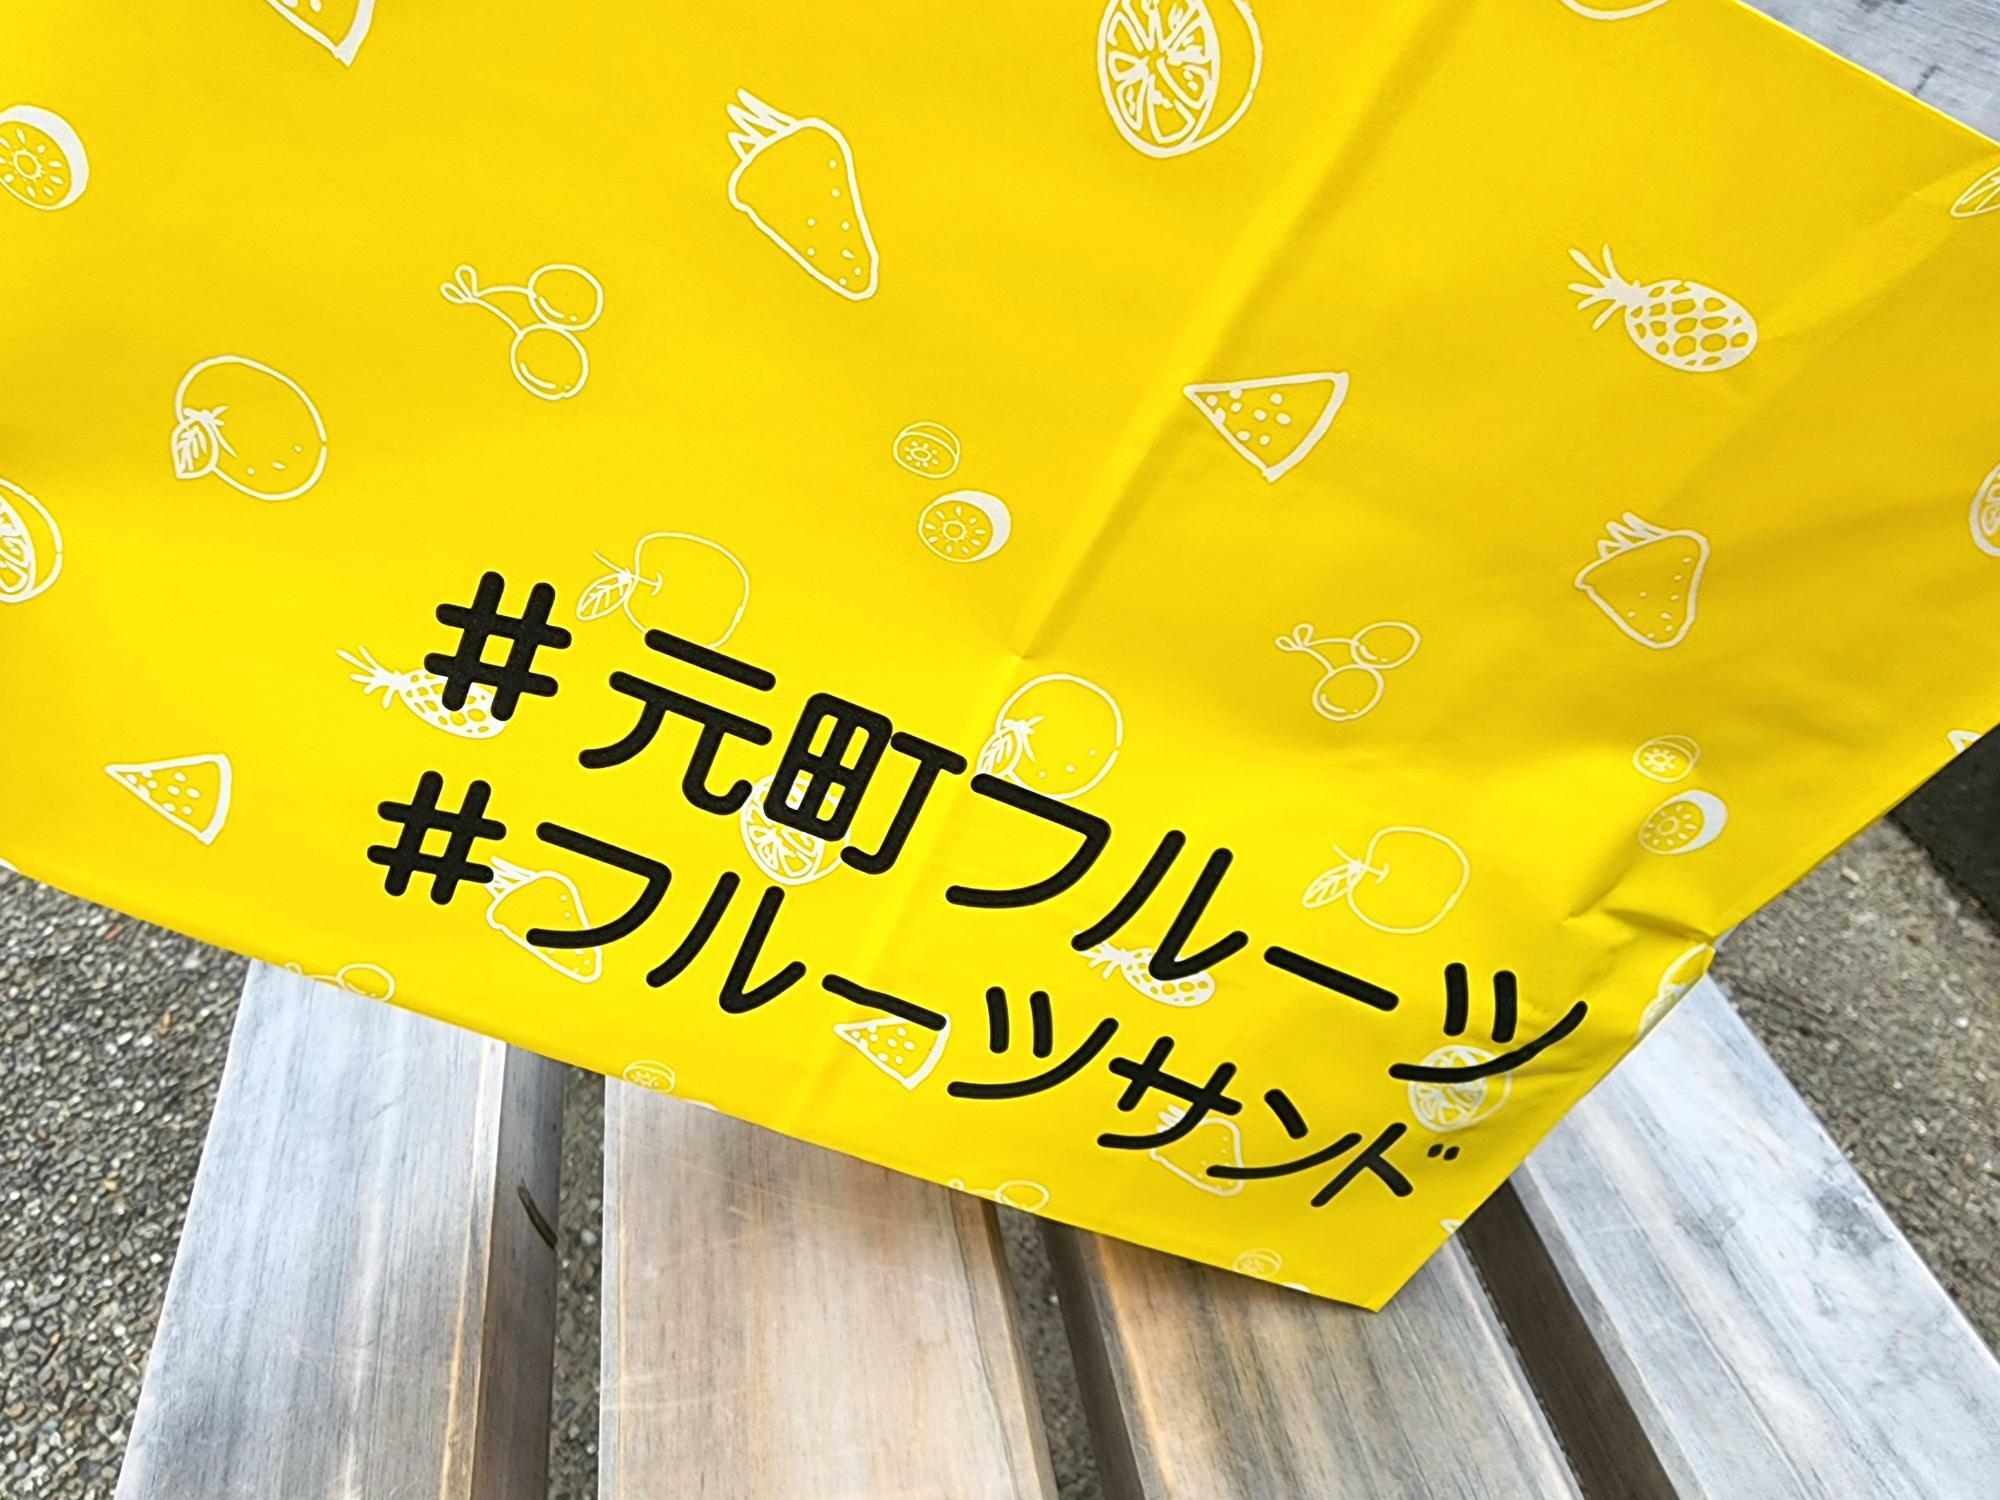 「徳島駅クレメントプラザ」POP-UP SHOPとして出店中「元町フルーツ」の紙袋。